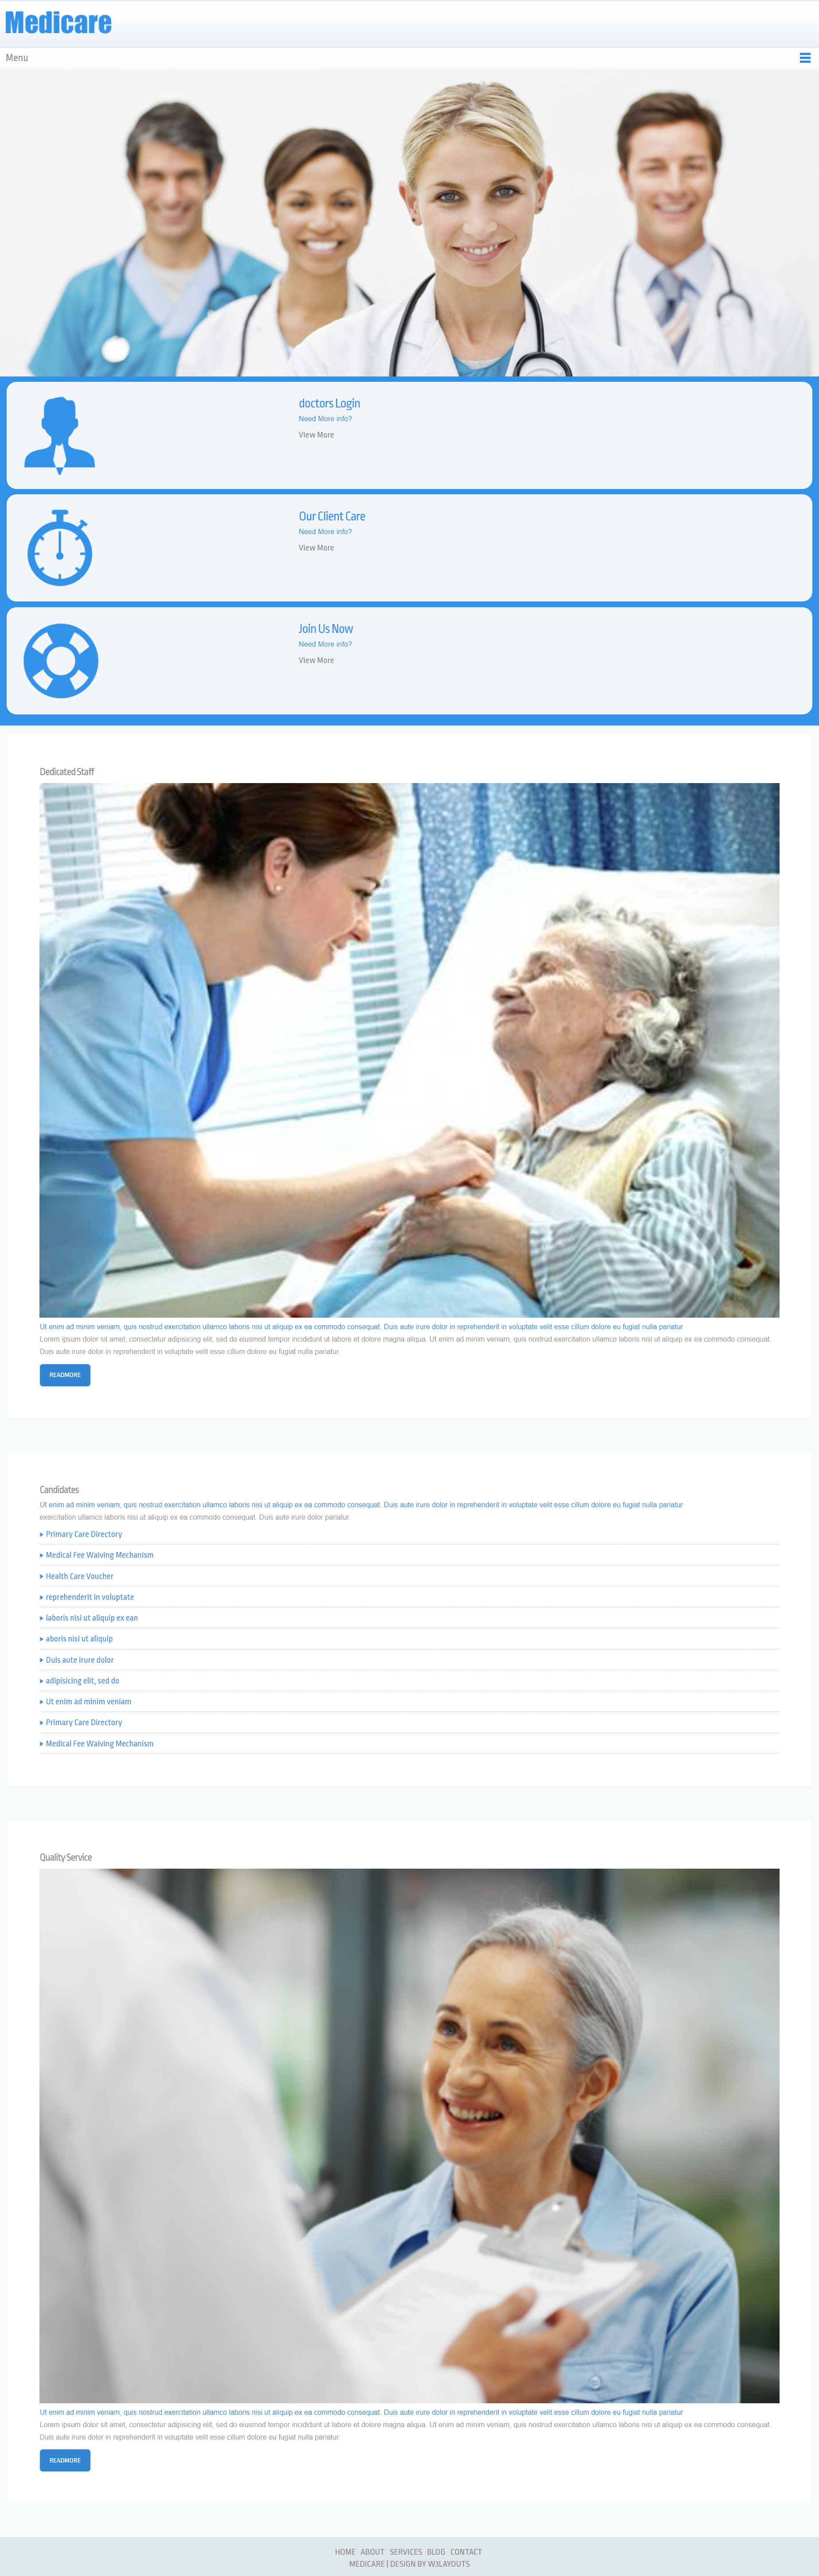 蓝色欧美风格响应式医疗保险中心网页模板